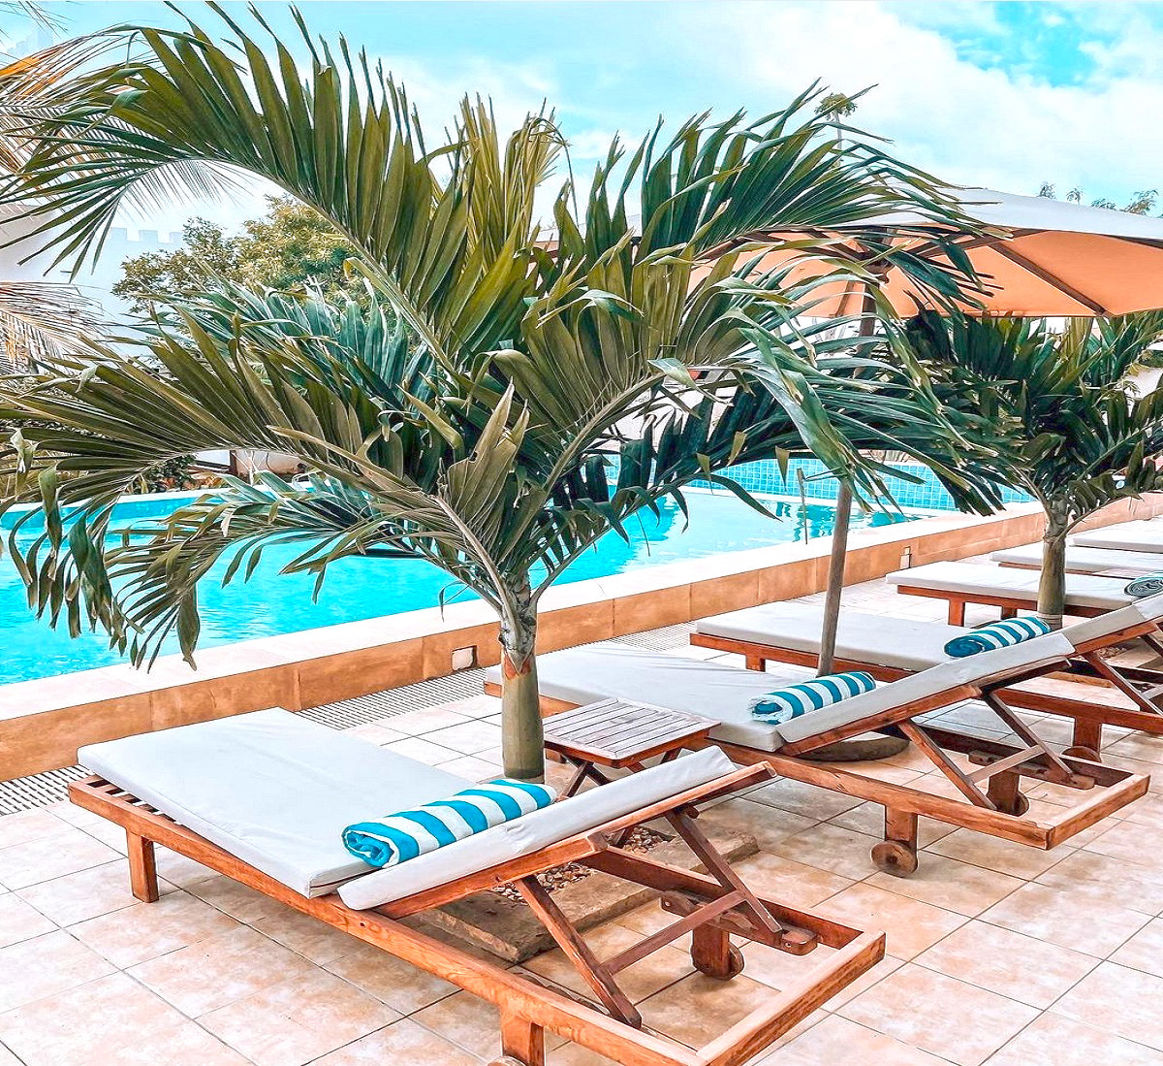 Corendon Zanzibar Star Resort - Tanzania - Zanzibar - Nungwi